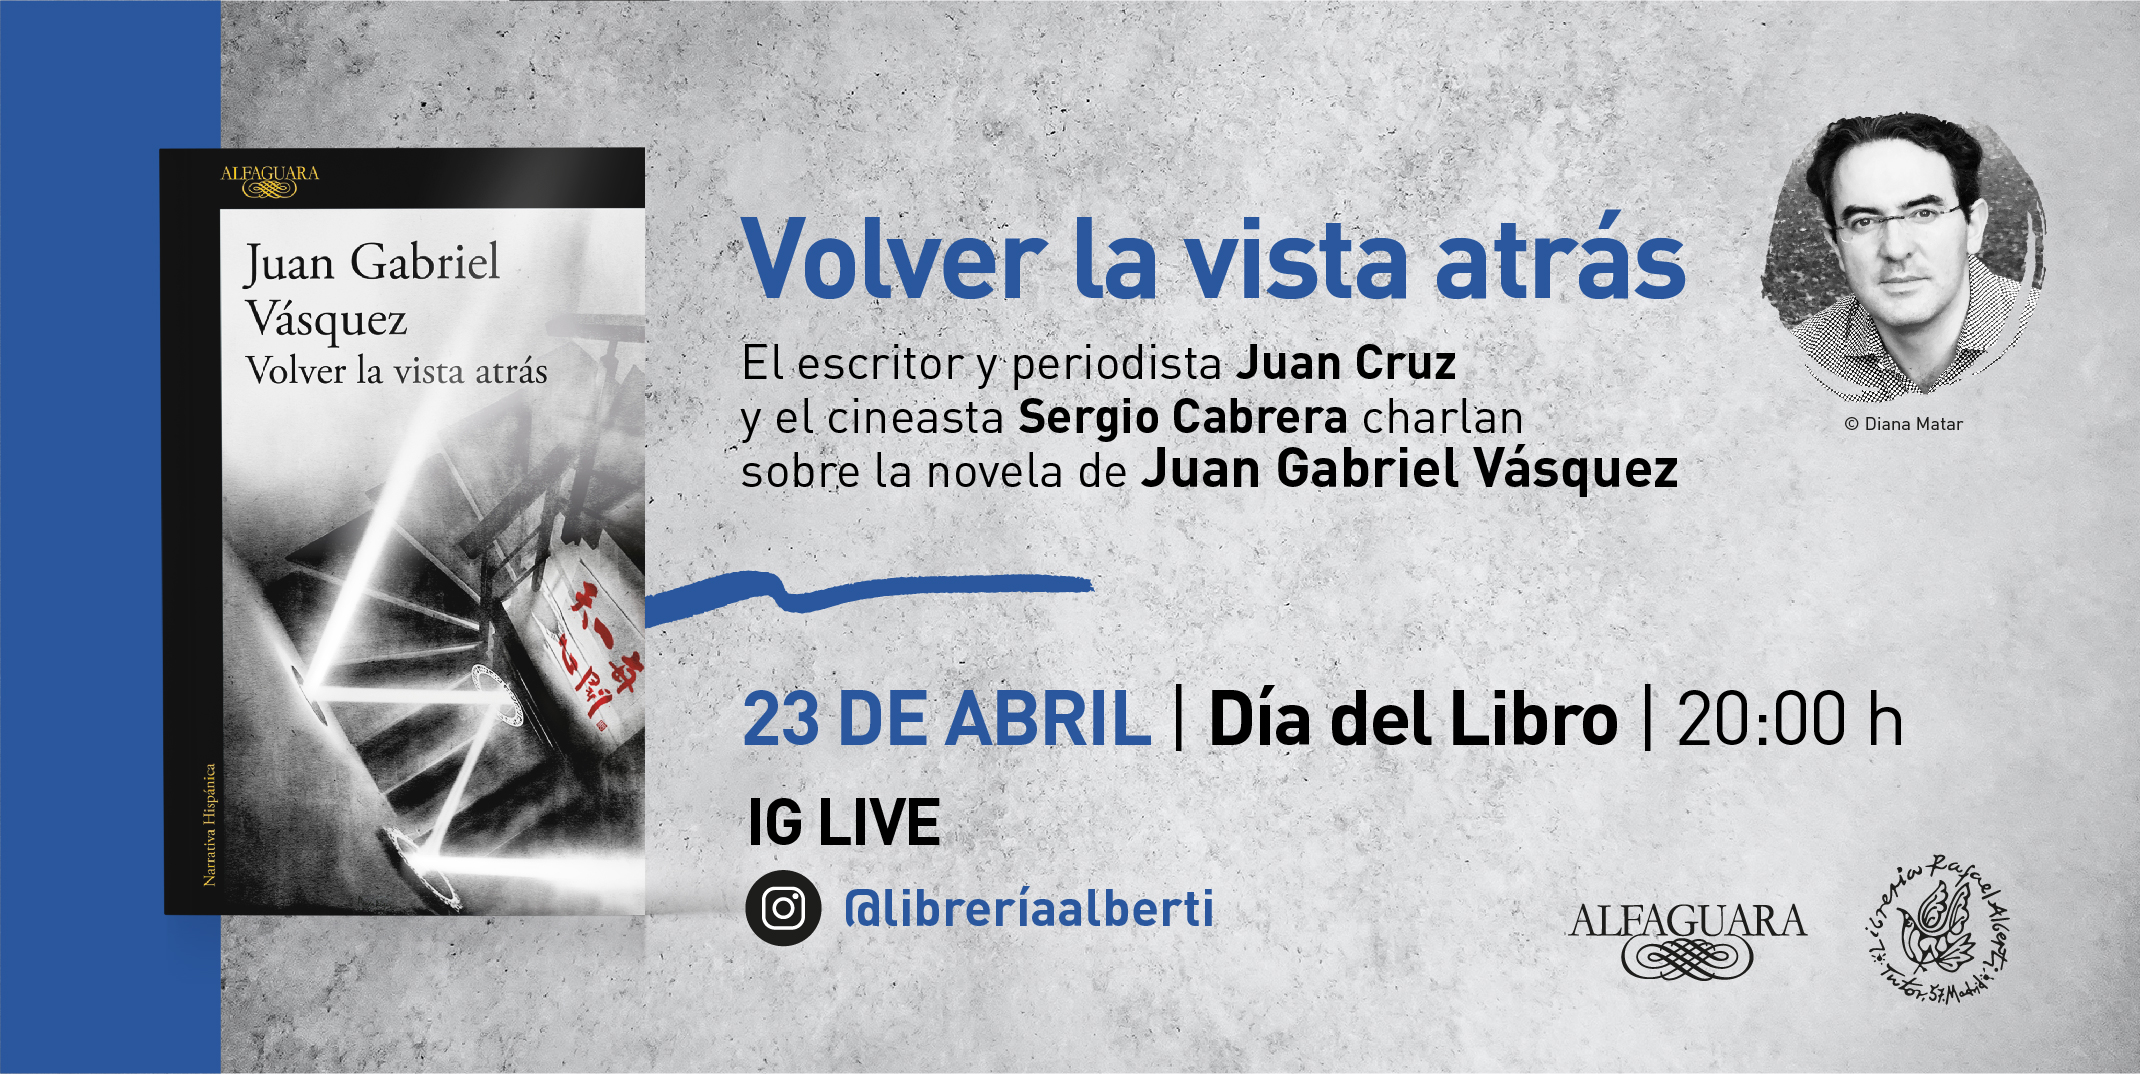 Celebra el Día del Libro con "Volver la vista atrás" Una conversación con Sergio Cabrera y Juan Cruz, sobre la novela de Juan Gabriel Vásquez